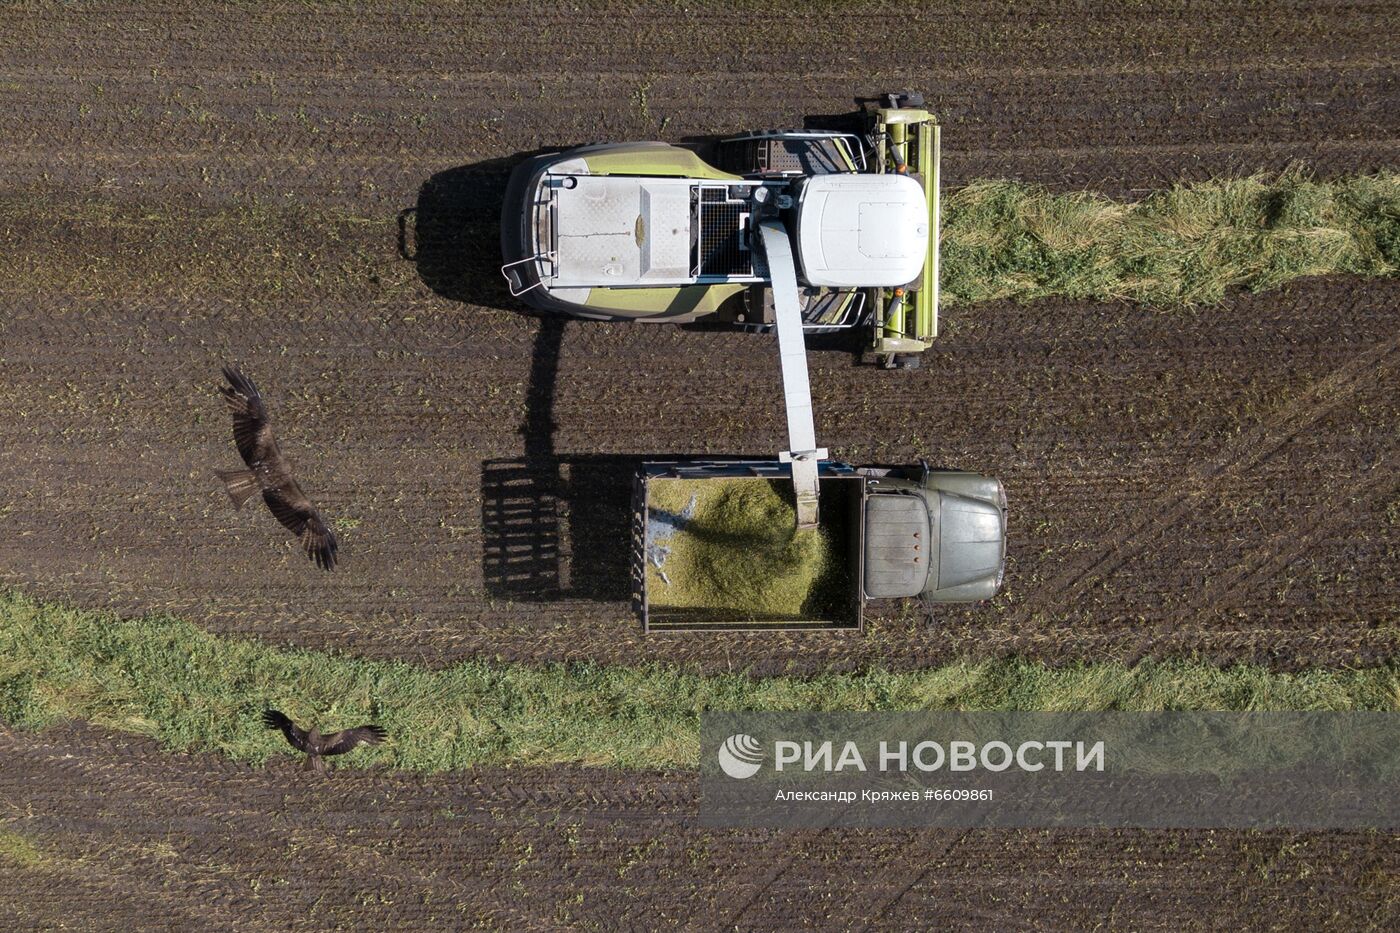 Заготовка сельхозкормов в Новосибирской области